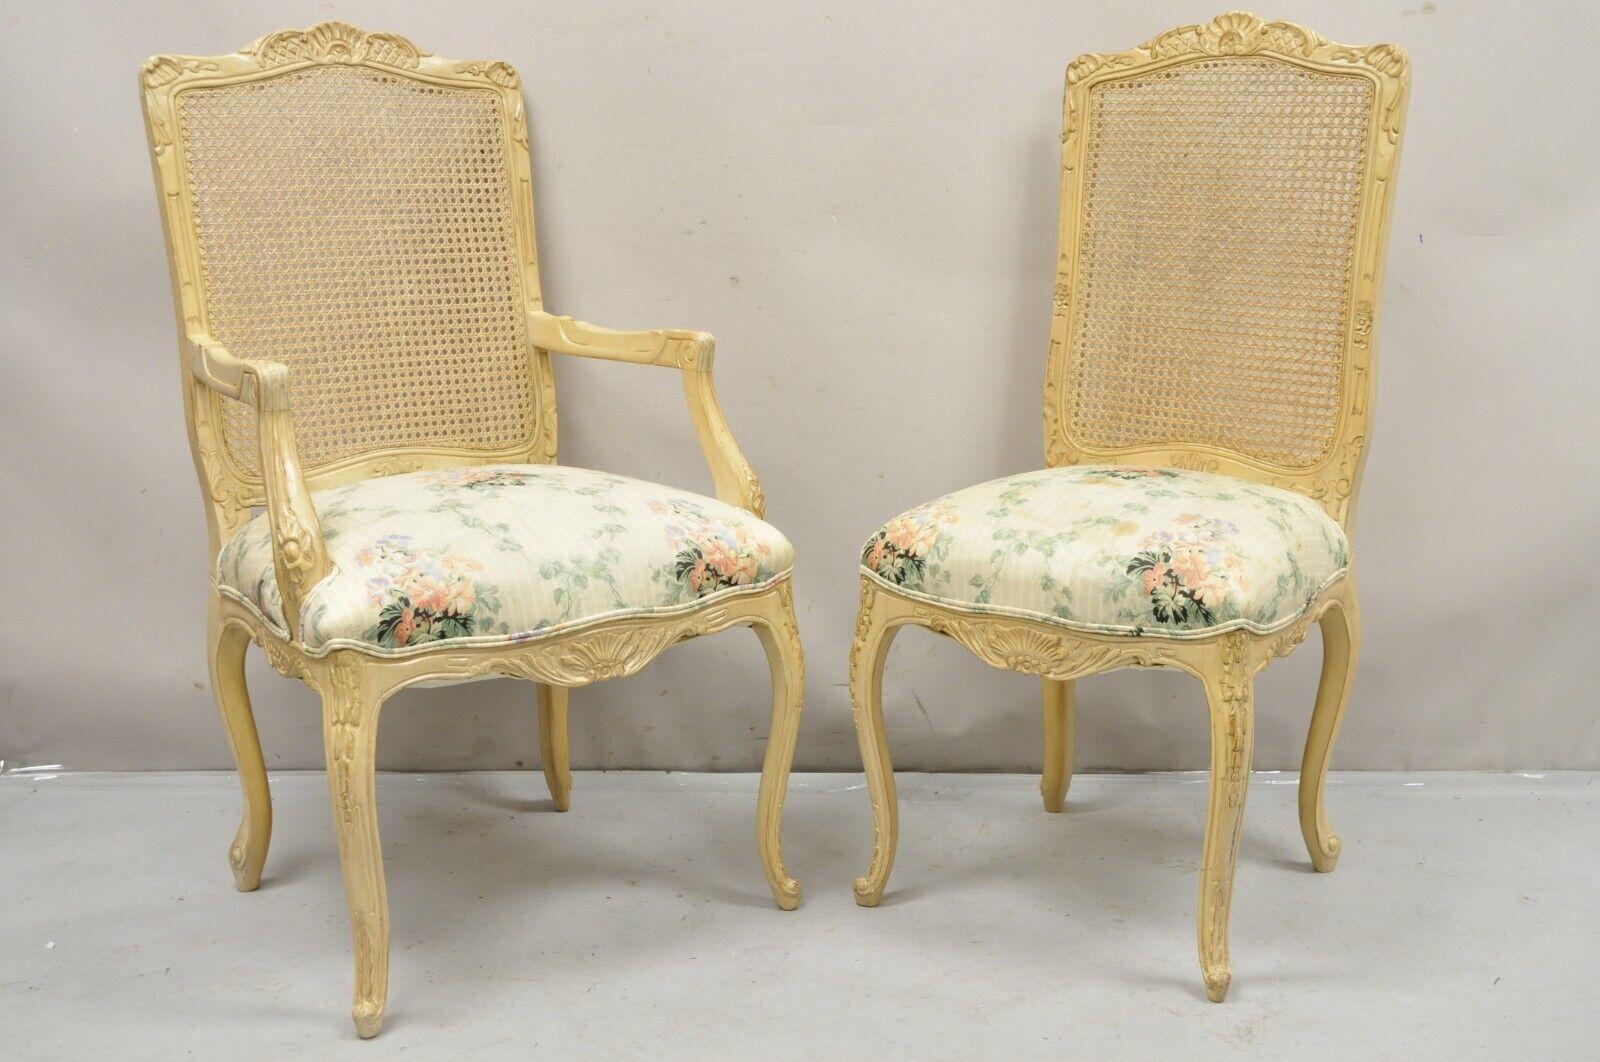 Chaises de salle à manger de style provincial Louis XV - Lot de 6. 2 fauteuils, 4 chaises d'appoint, finition vieillie blanc lavé beige, dossiers cannés, cadres joliment sculptés, très bel ensemble vintage. Circa Mid to Late 20th Century.
Mesures :